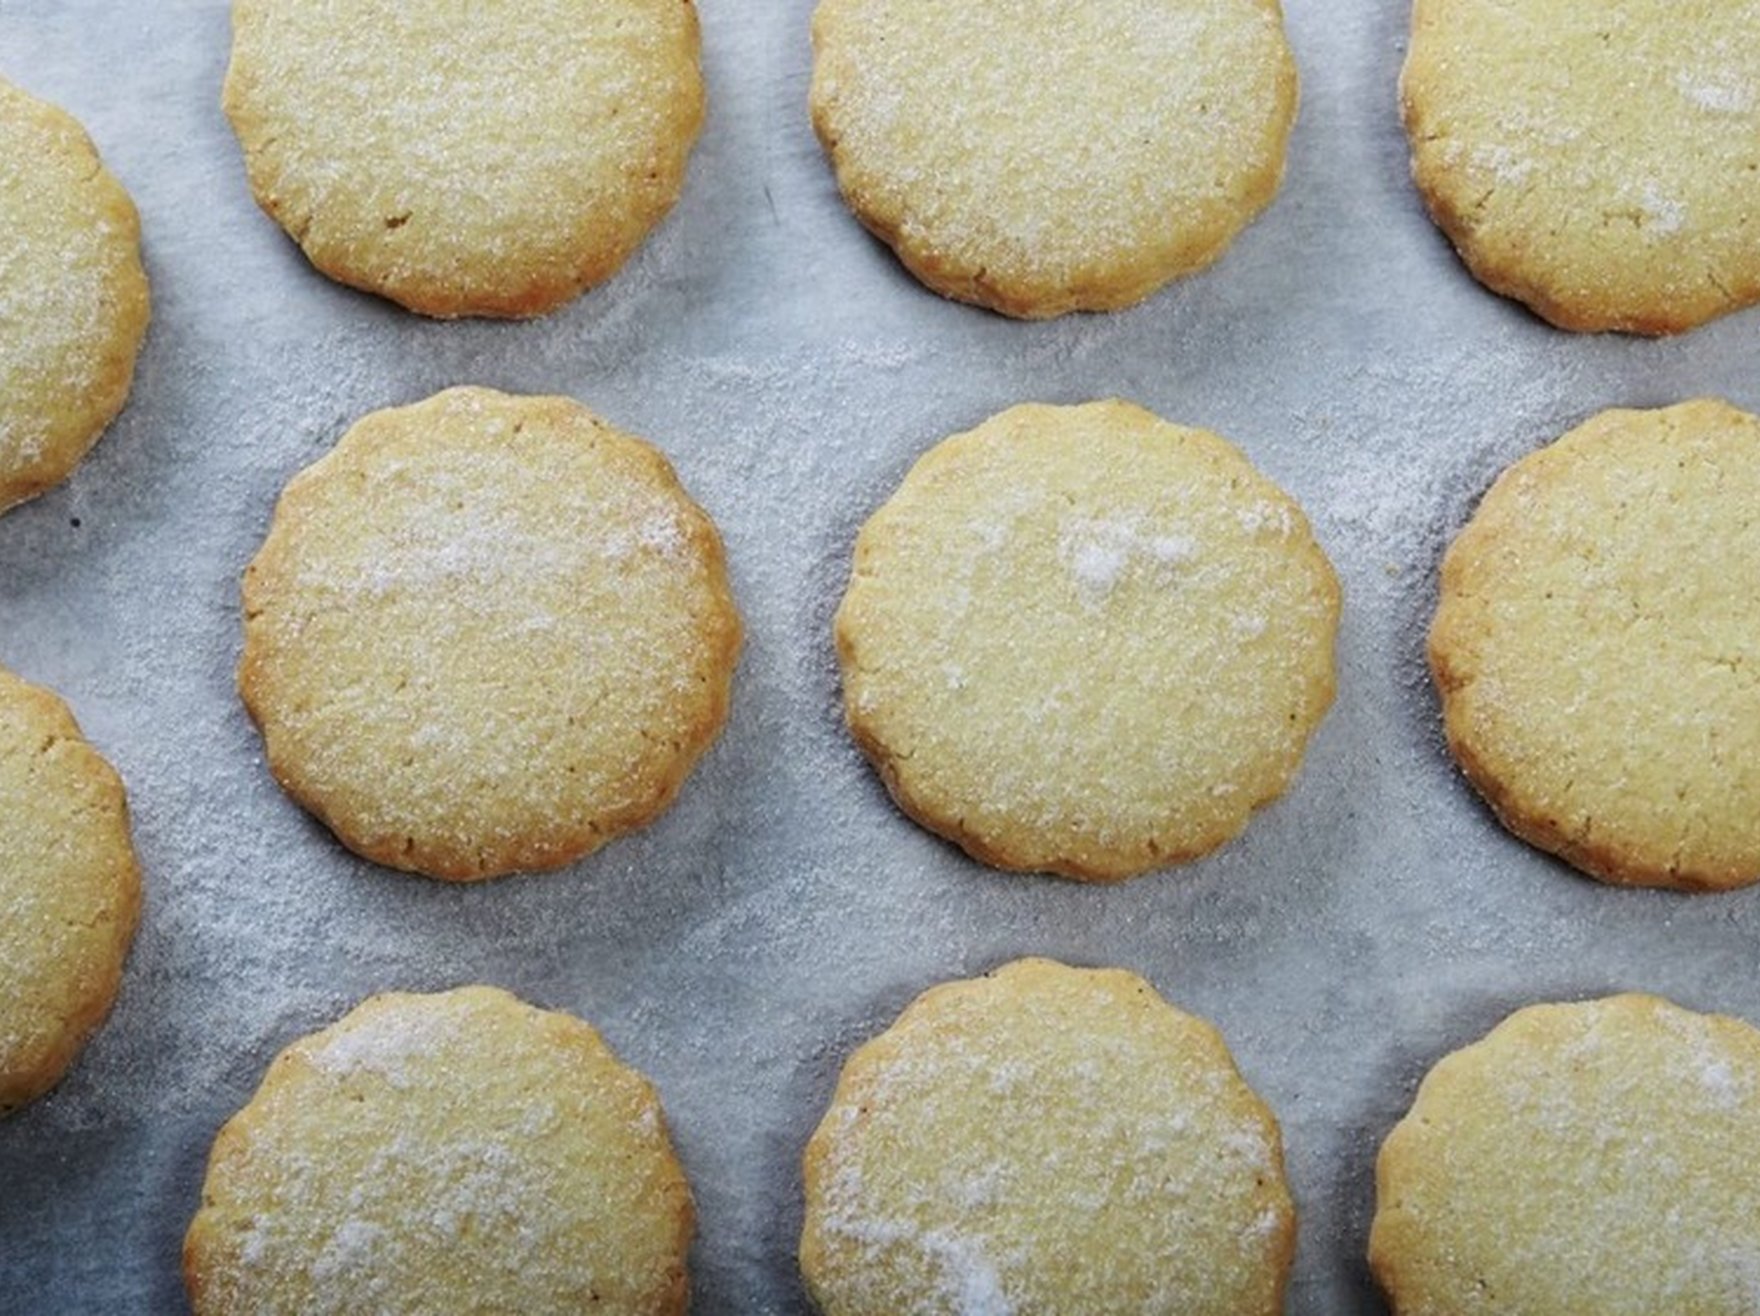 James St Cookery School: Shortbread biscuits and fruit scones